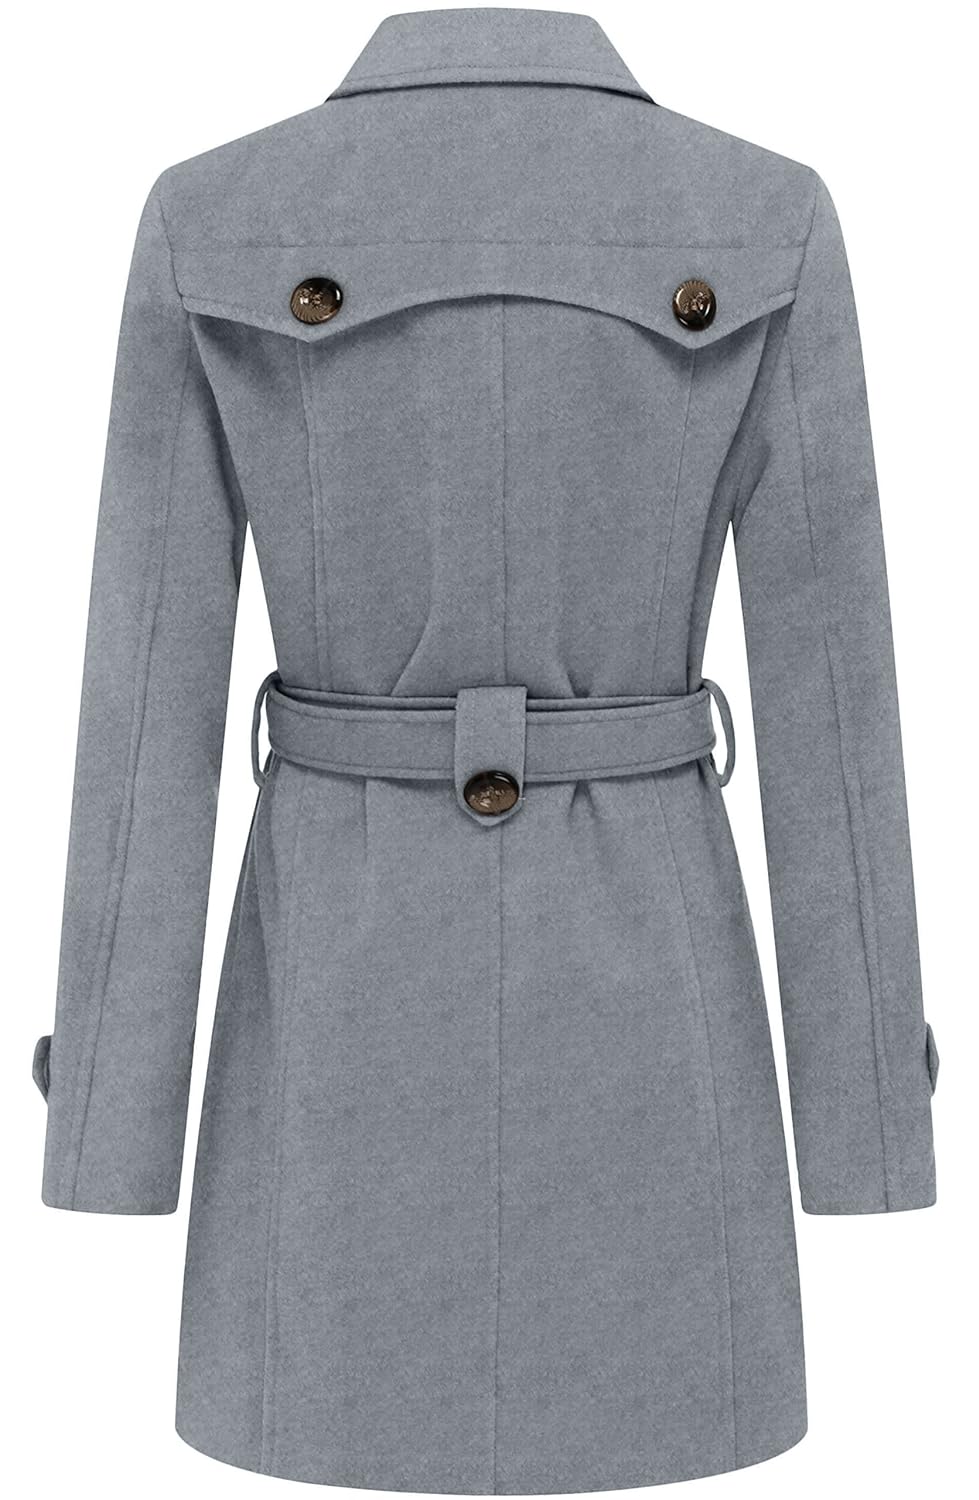 Wantdo Women's Trench Coat Long Sleeve Pea Coat Overcoat with Belt Grey XL